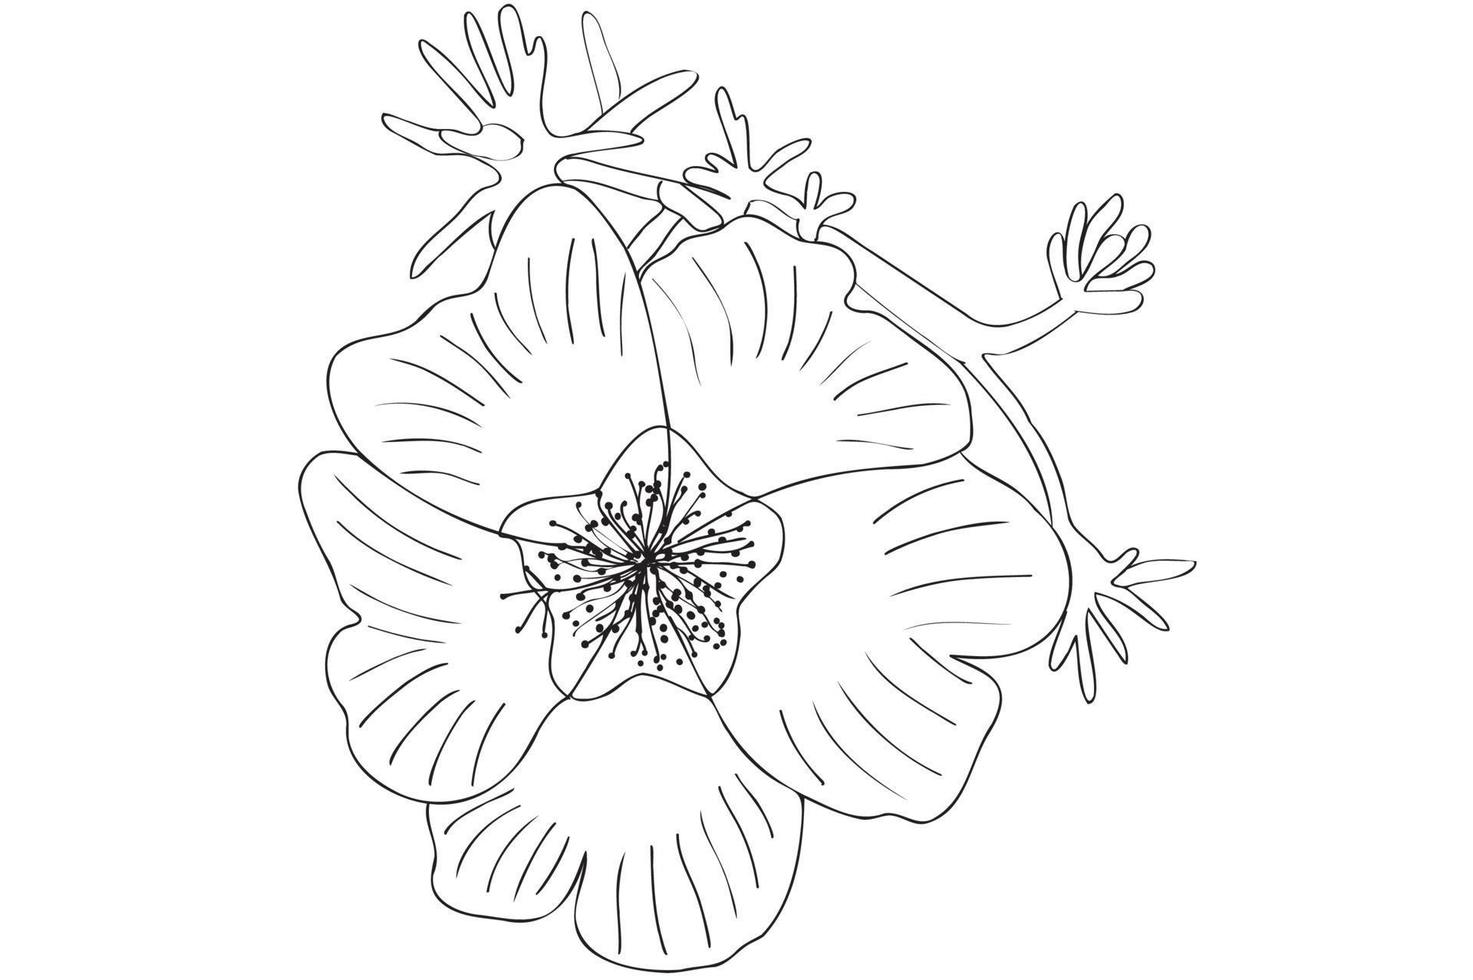 svart och vit vektor blomma, linjekonst, kontur blomma illustration, blomteckning med svart tunn kontur linje isolerad på vit bakgrund.